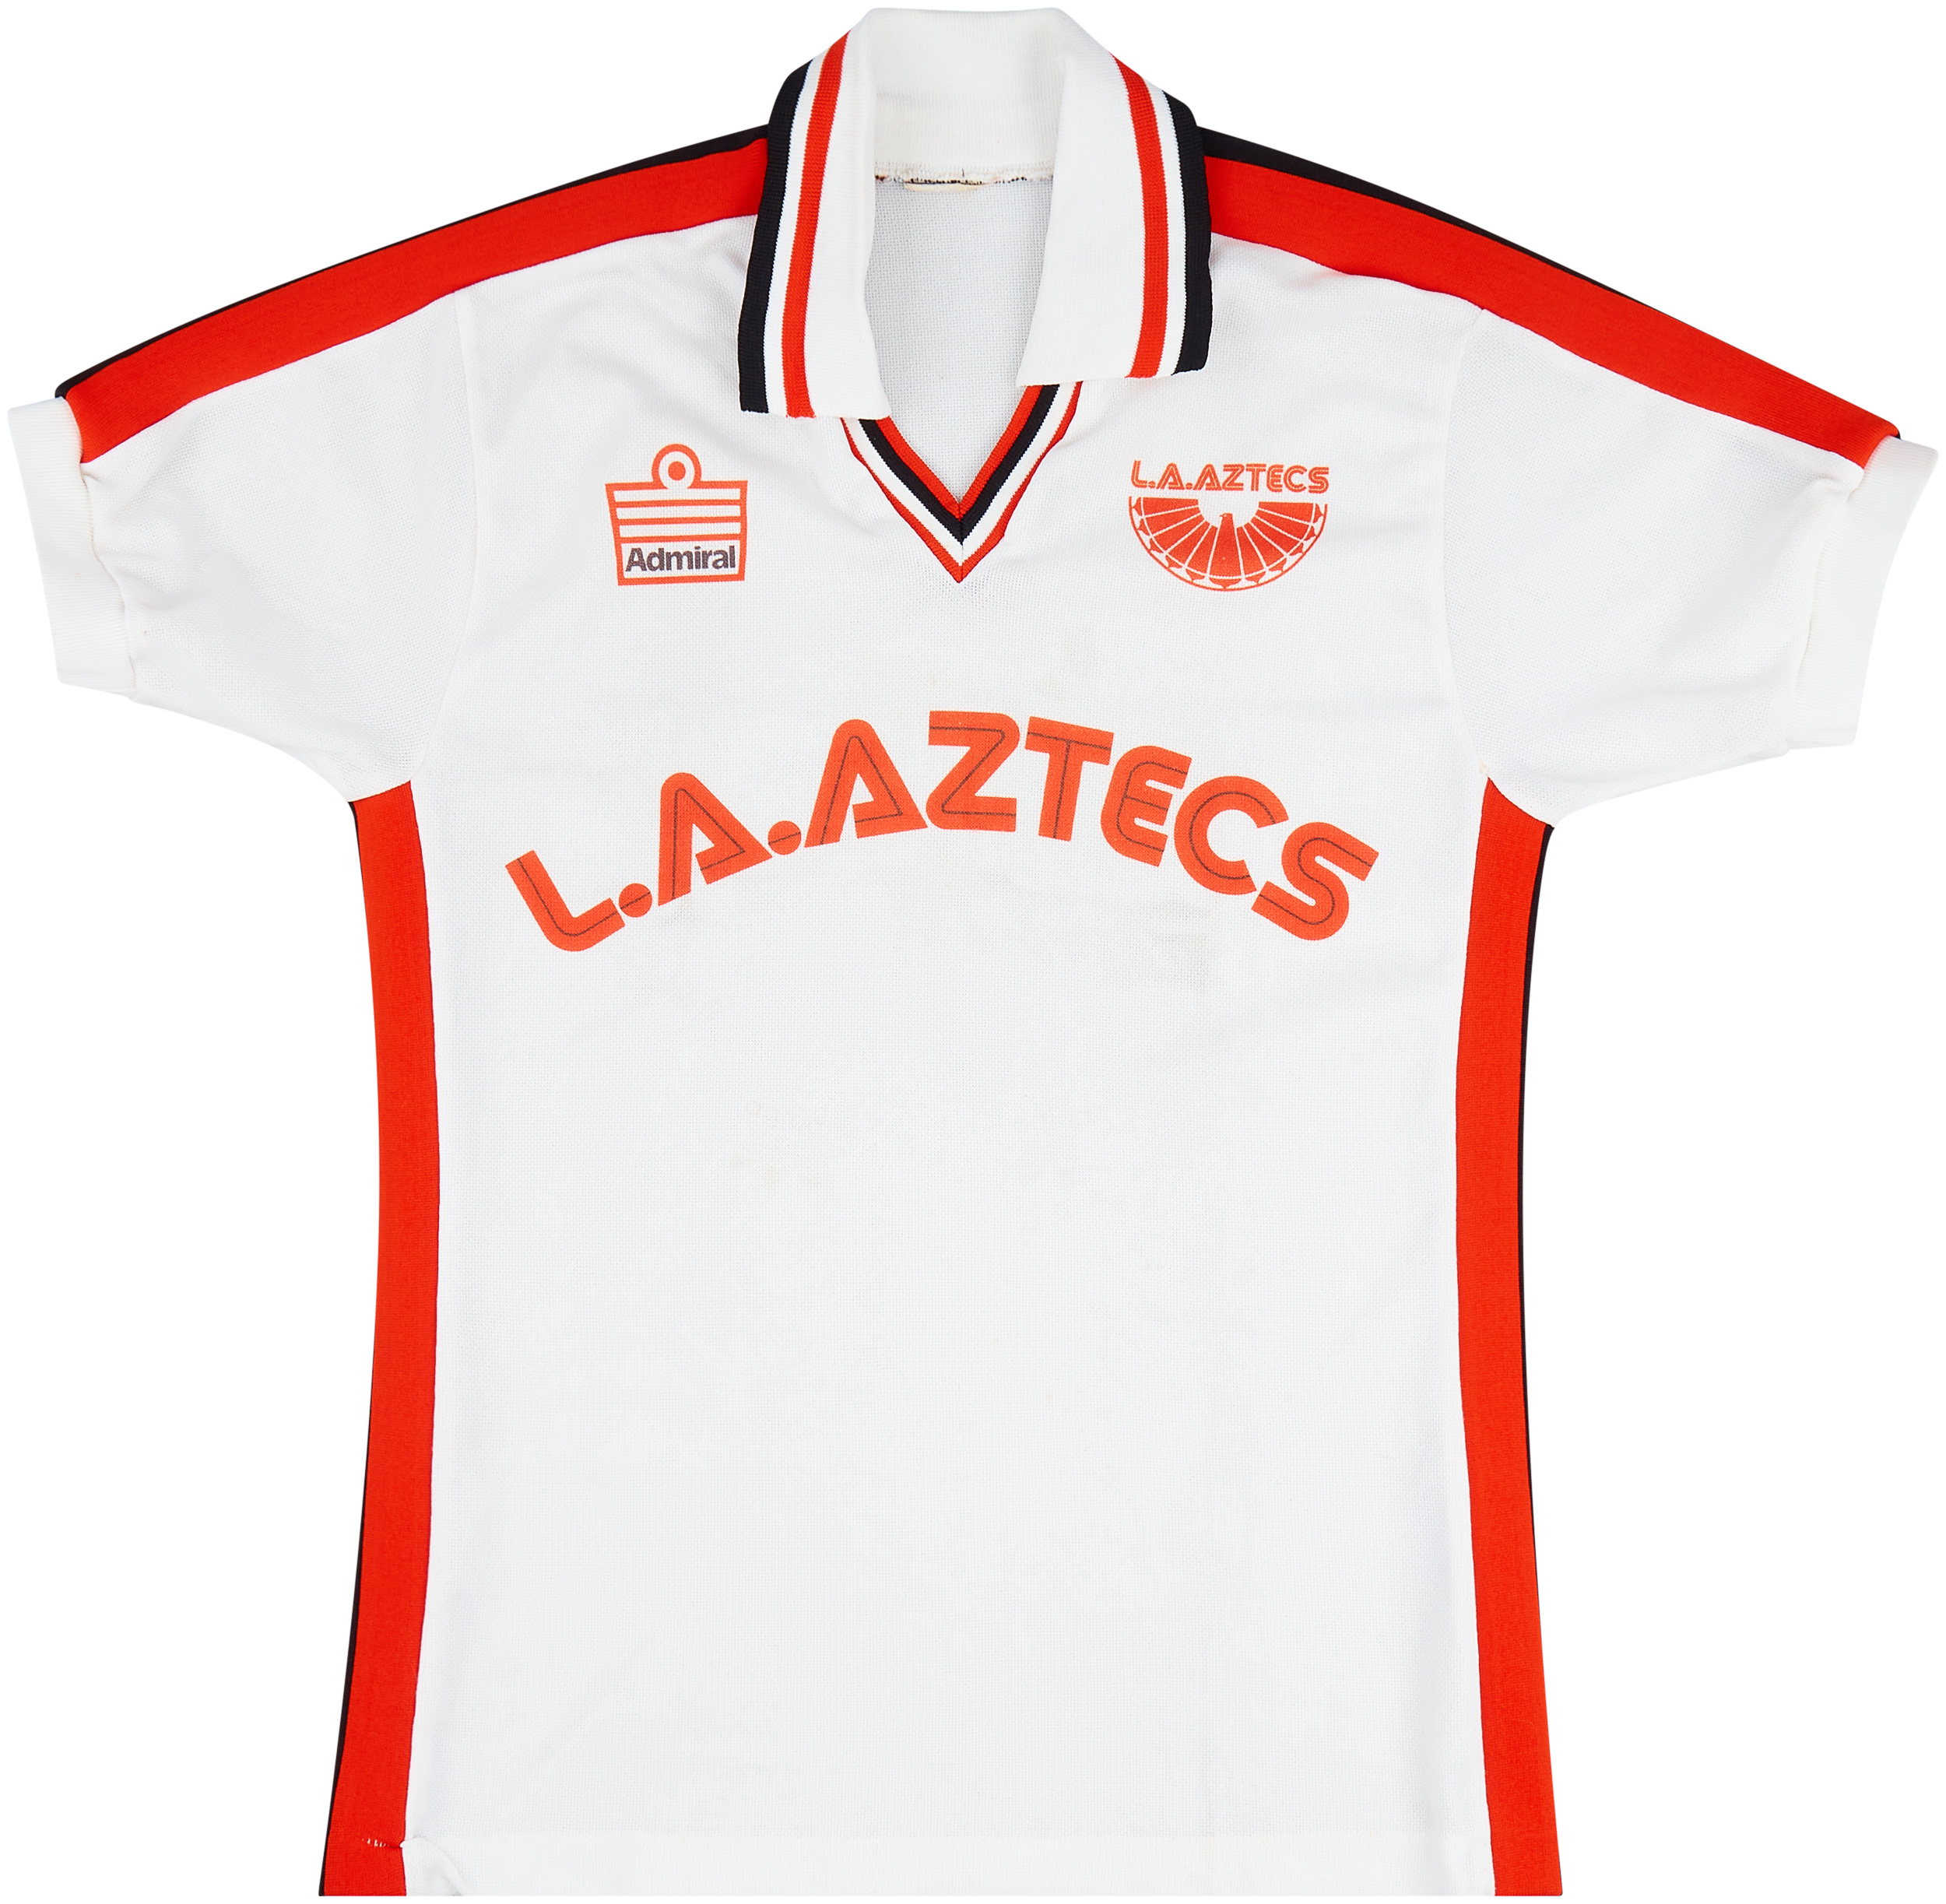 Los Angeles Aztecs Home camisa de futebol 1979 - 1980.